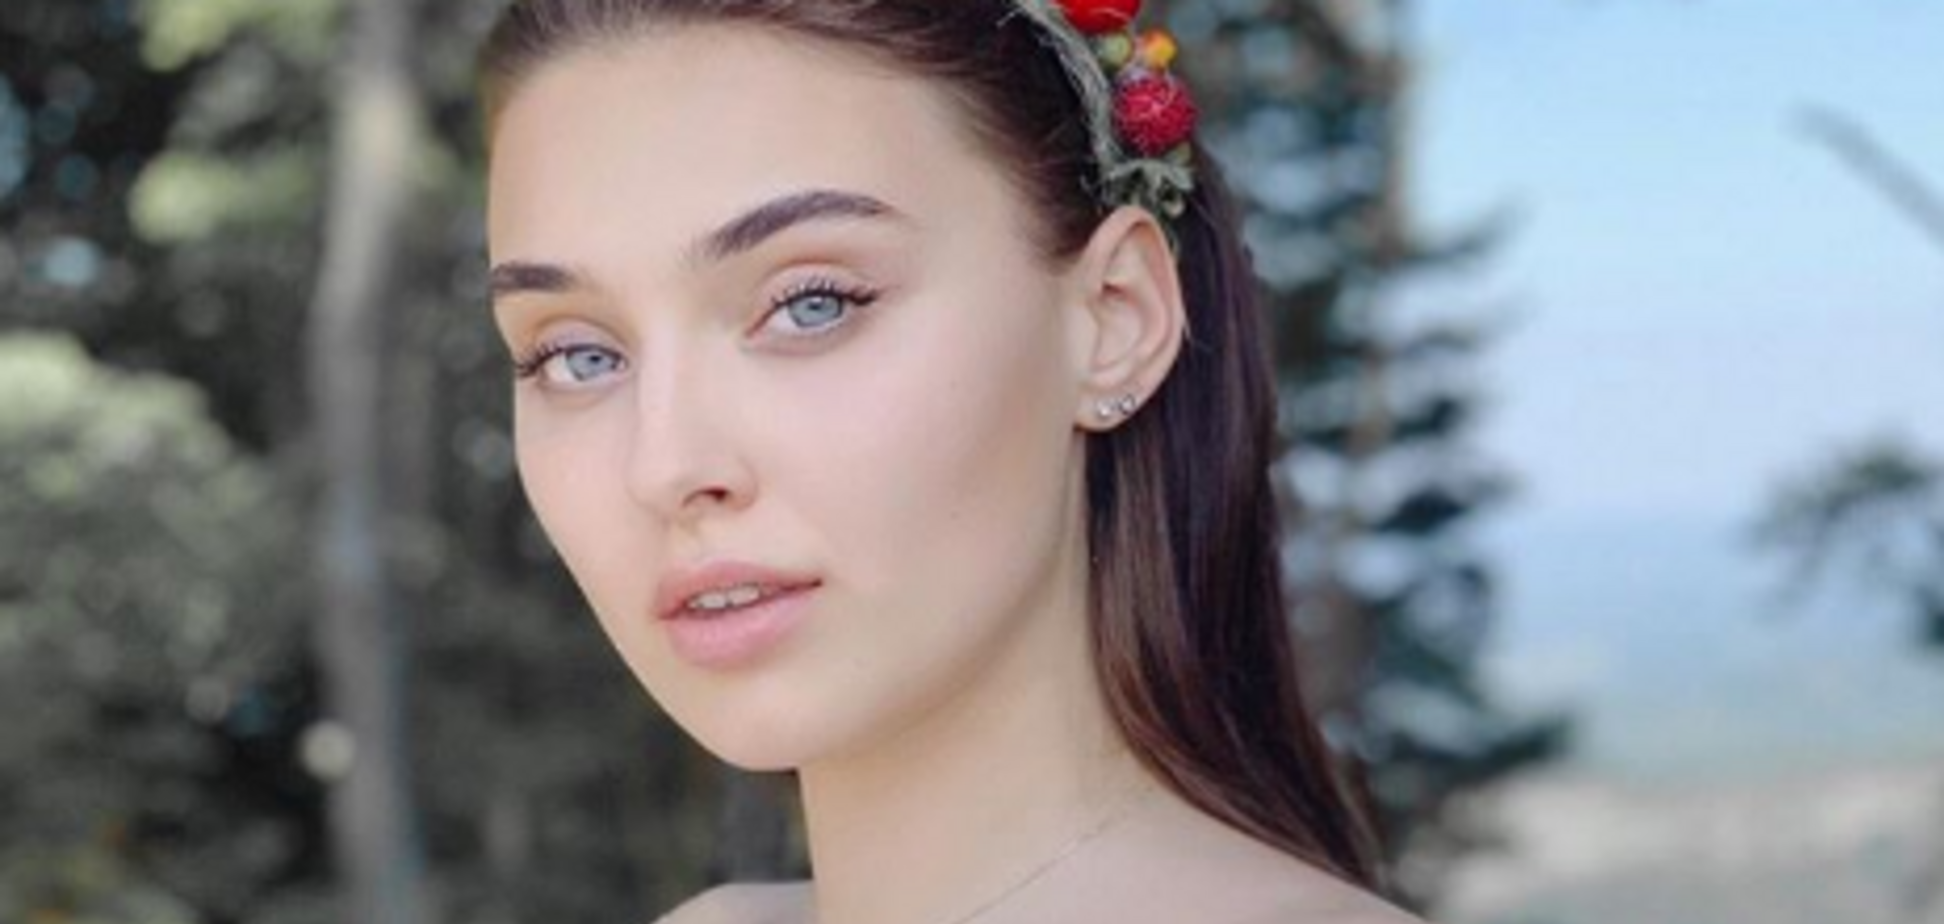 Лишенная титула 'Мисс Украина-2018' подала в суд на организаторов конкурса: подробности скандала